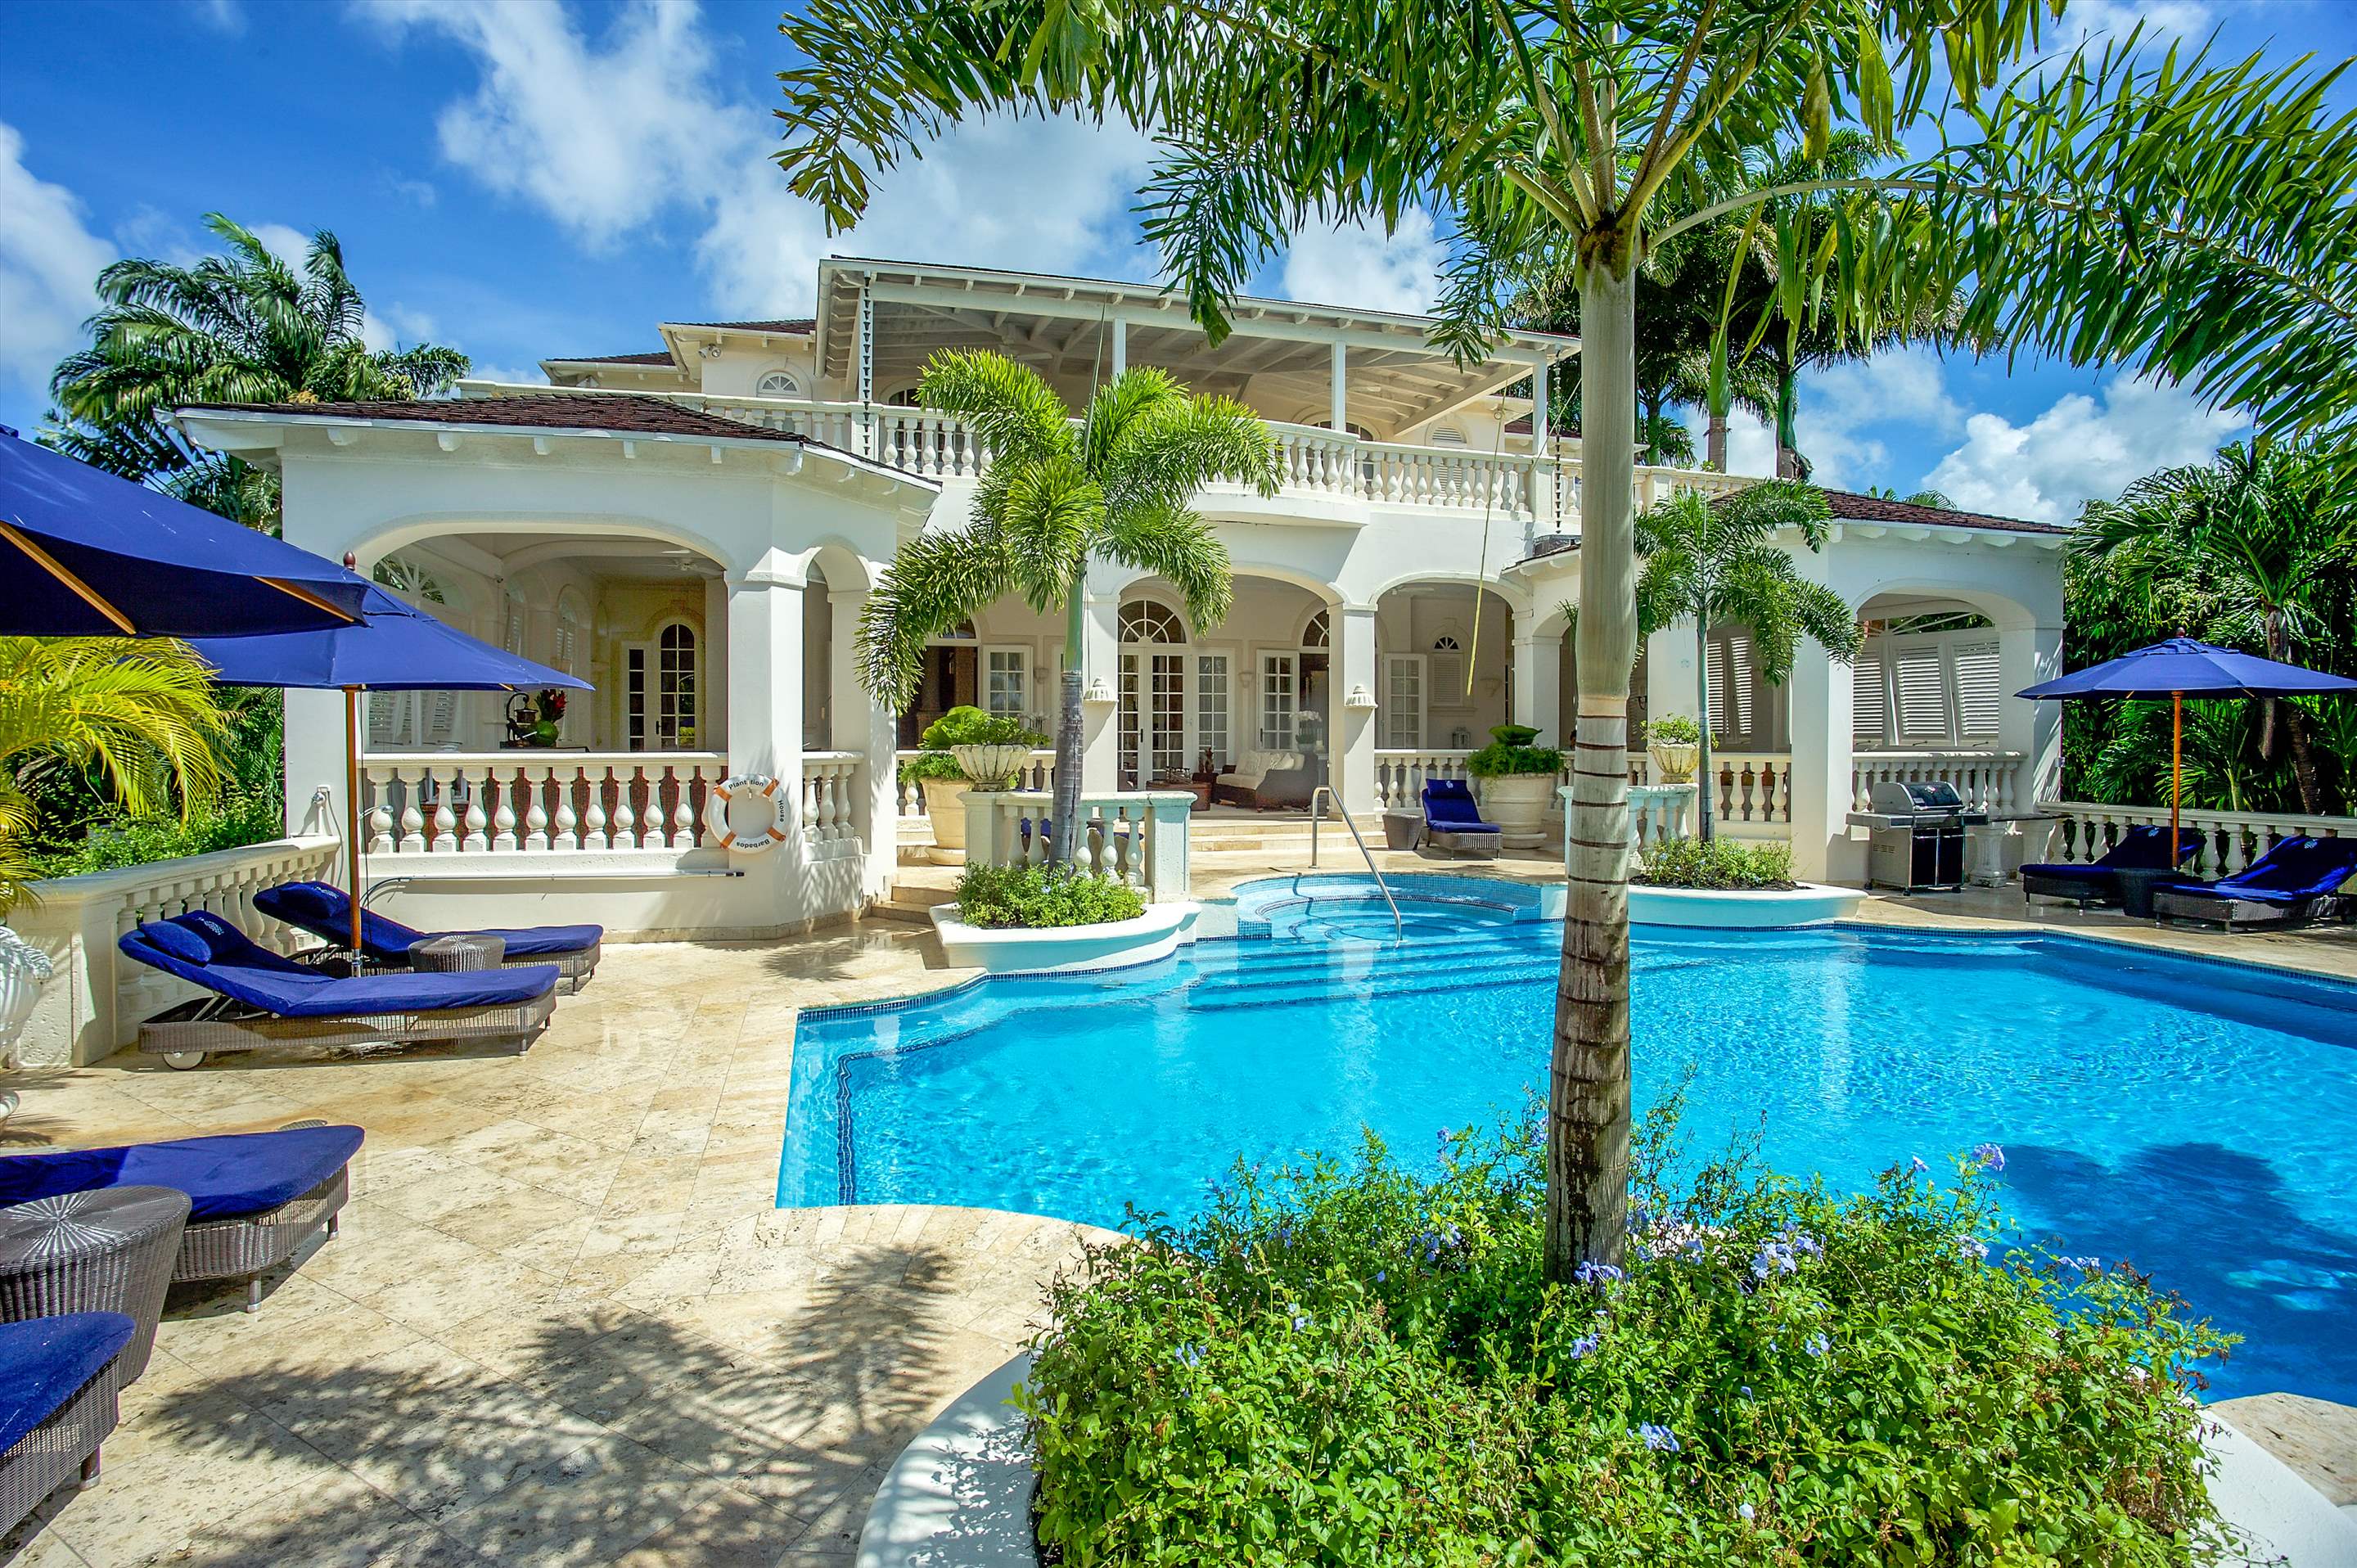 Plantation House, Royal Westmoreland, 4 bedroom, 4 bedroom villa in St. James & West Coast, Barbados Photo #11